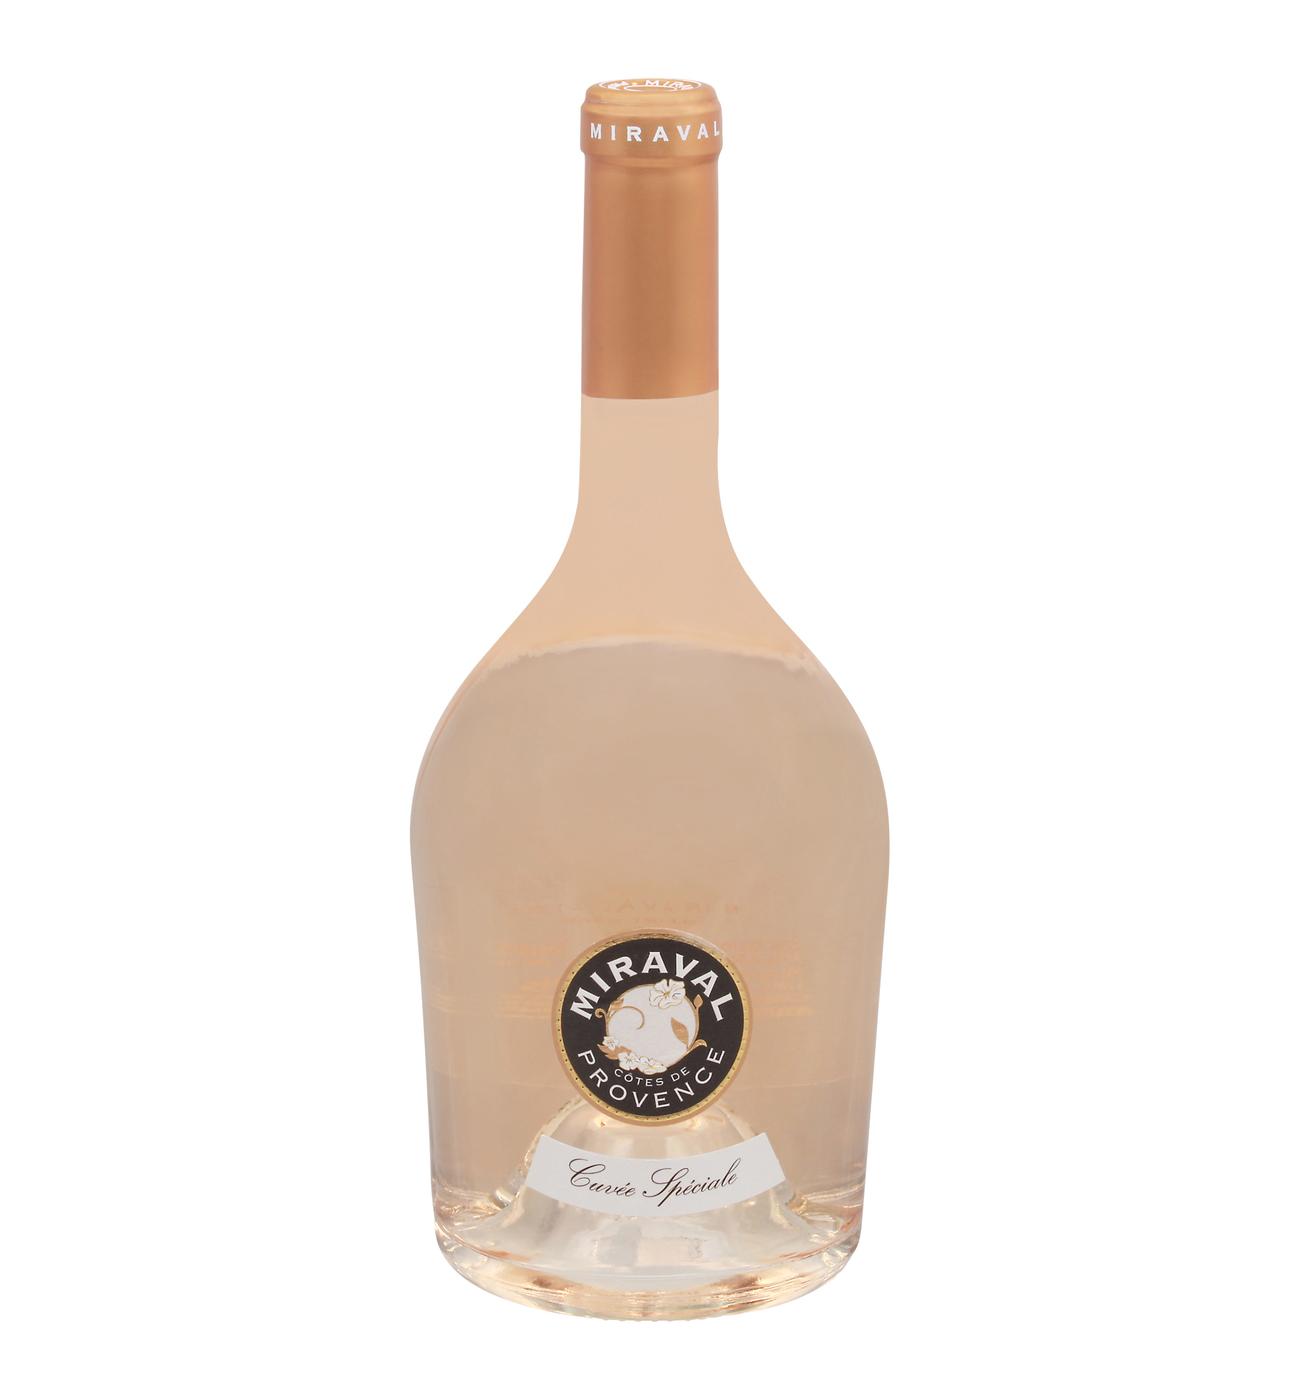 Miraval Côtes de Provence Rosé Wine; image 2 of 2